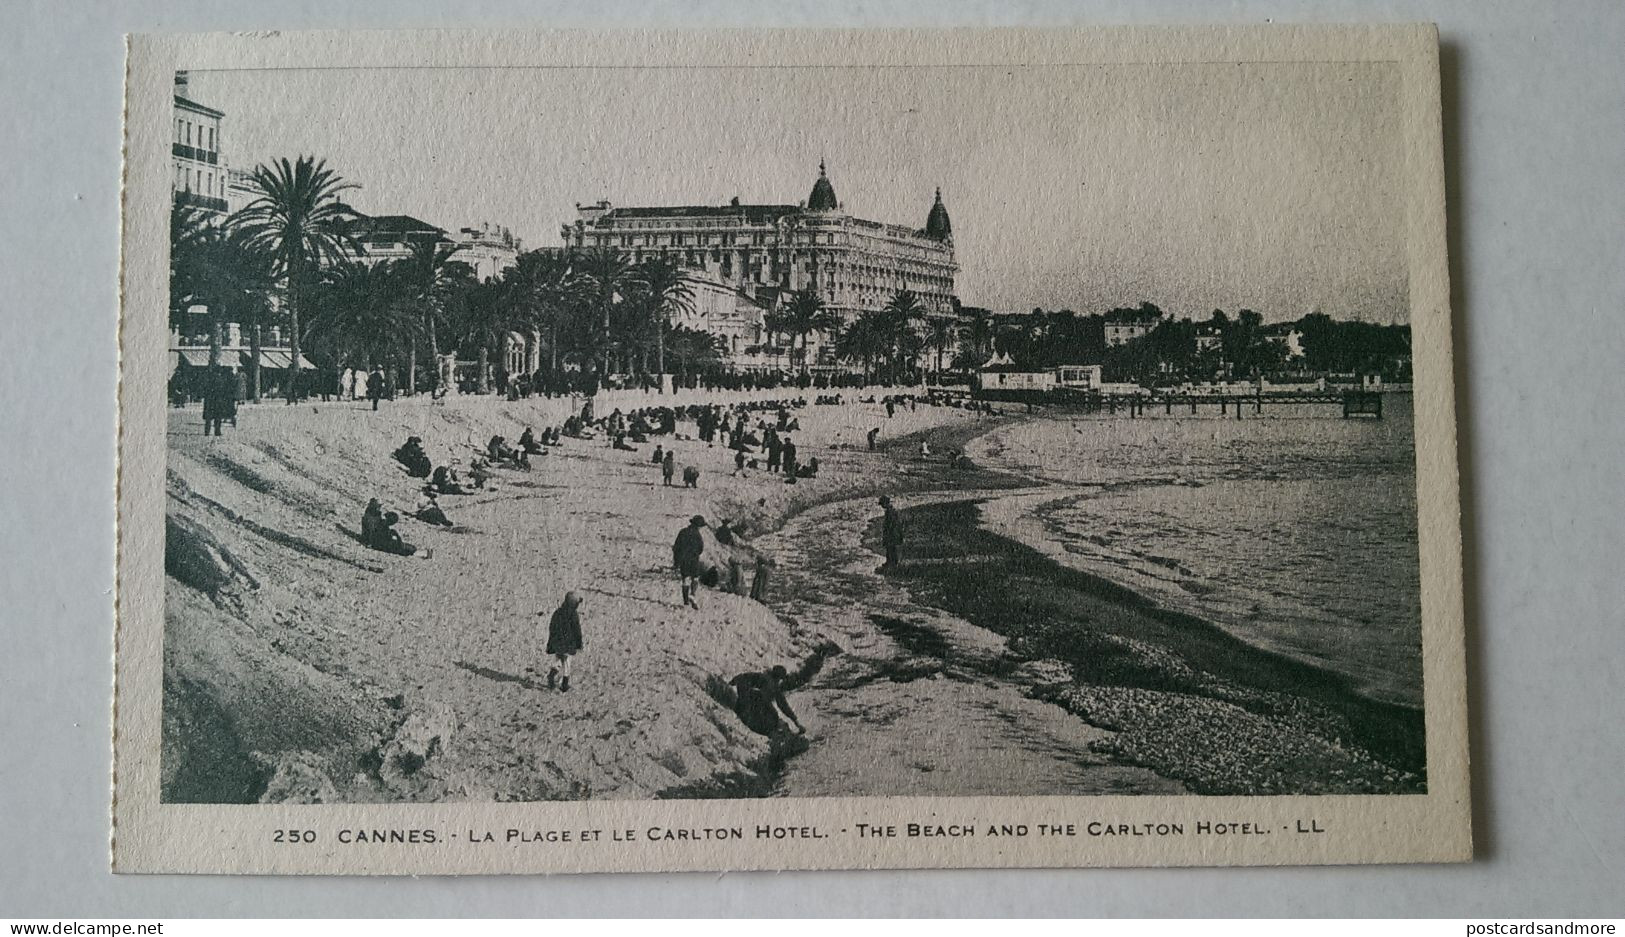 France Cannes Lot of 18 unused postcards Lévy et Neurdein Réunis ca. 1925